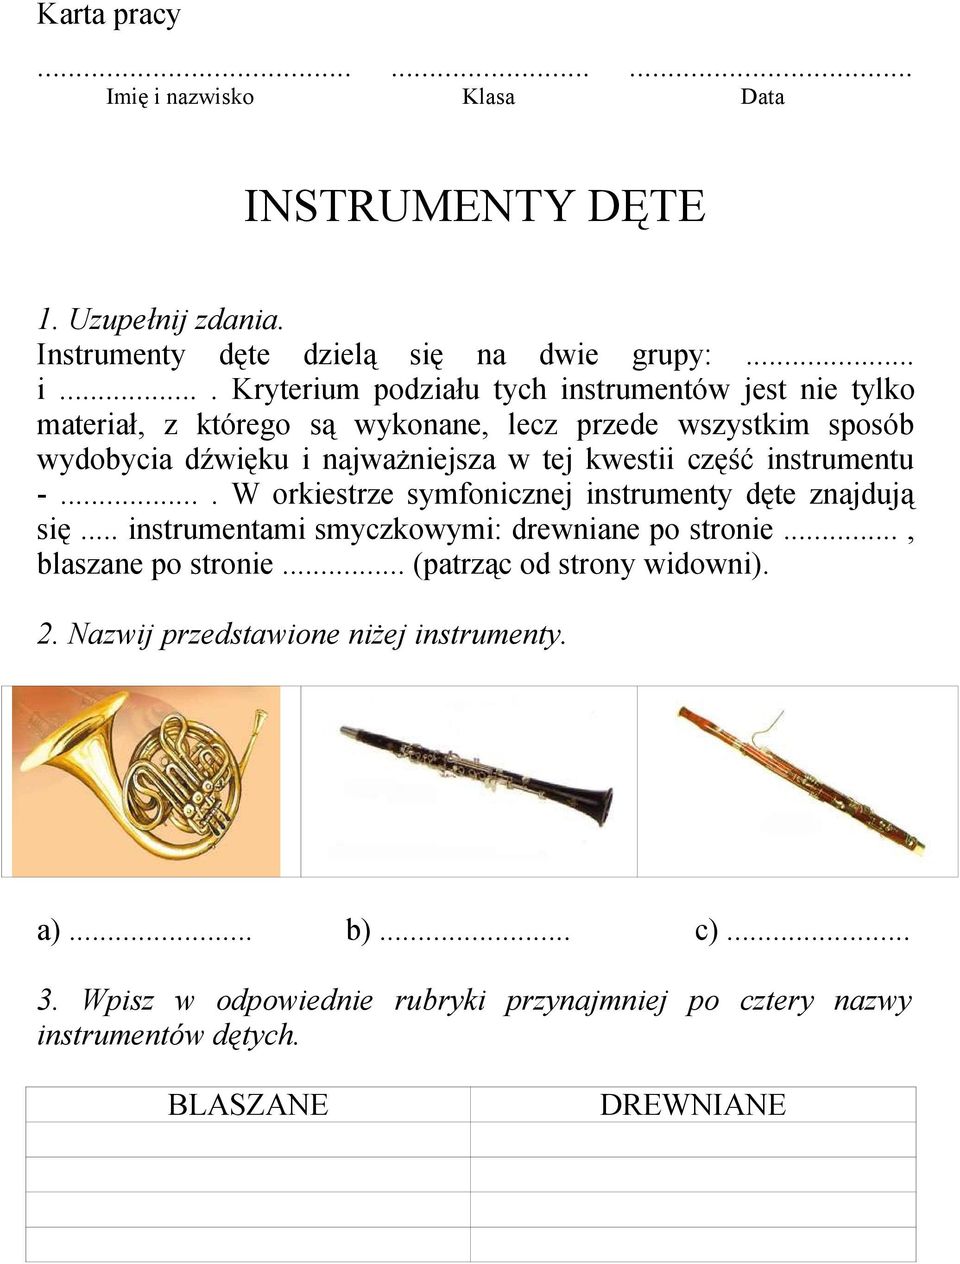 ... Kryterium podziału tych instrumentów jest nie tylko materiał, z którego są wykonane, lecz przede wszystkim sposób wydobycia dźwięku i najważniejsza w tej